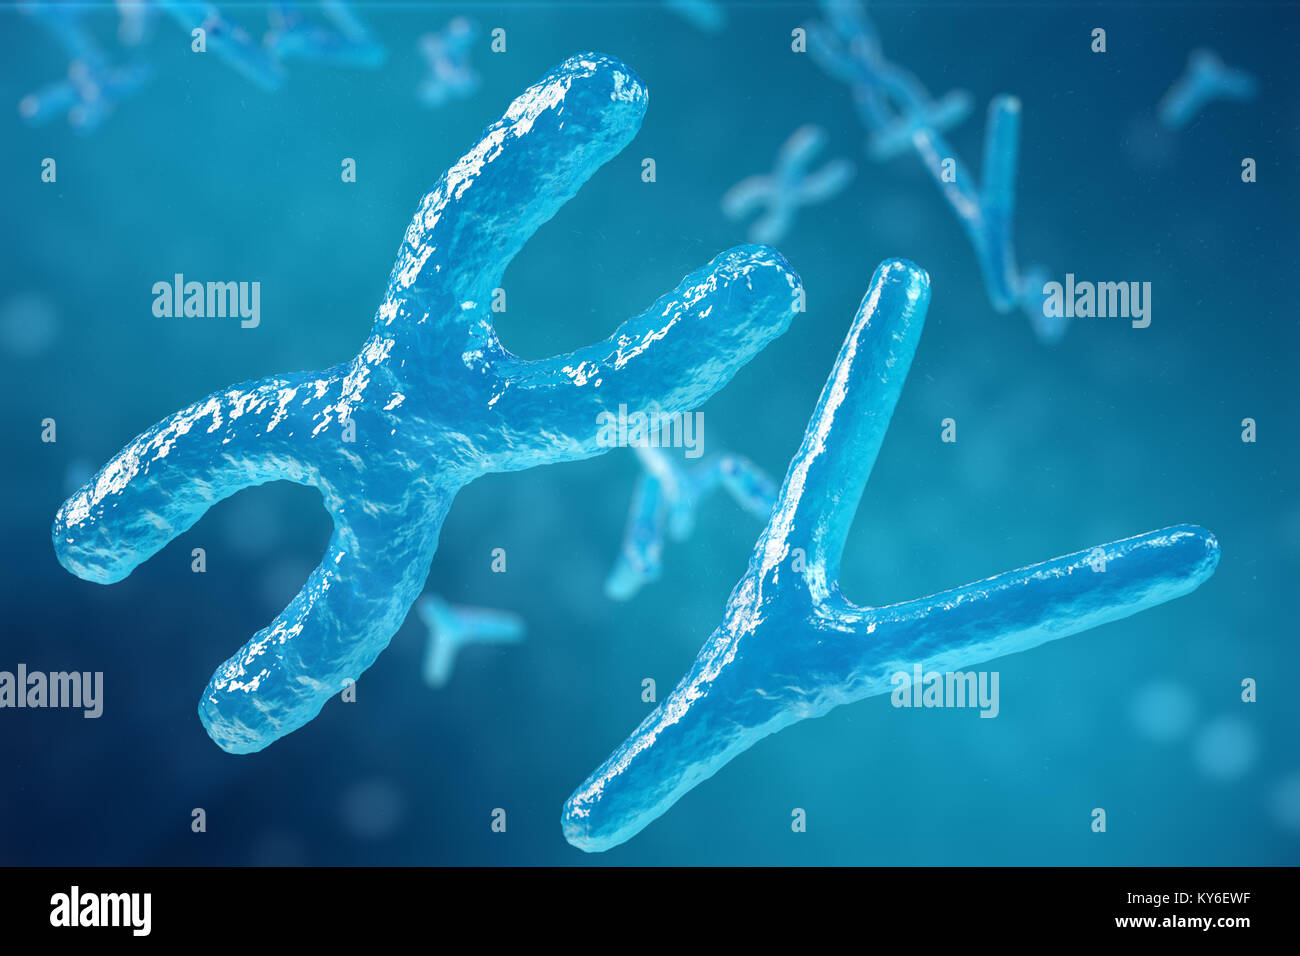 Illustration 3d De Chromosomes Xy Comme Un Concept De La Biologie Humaine Symbole Medical La Therapie Genique Ou La Microbiologie A La Recherche Genetique Photo Stock Alamy